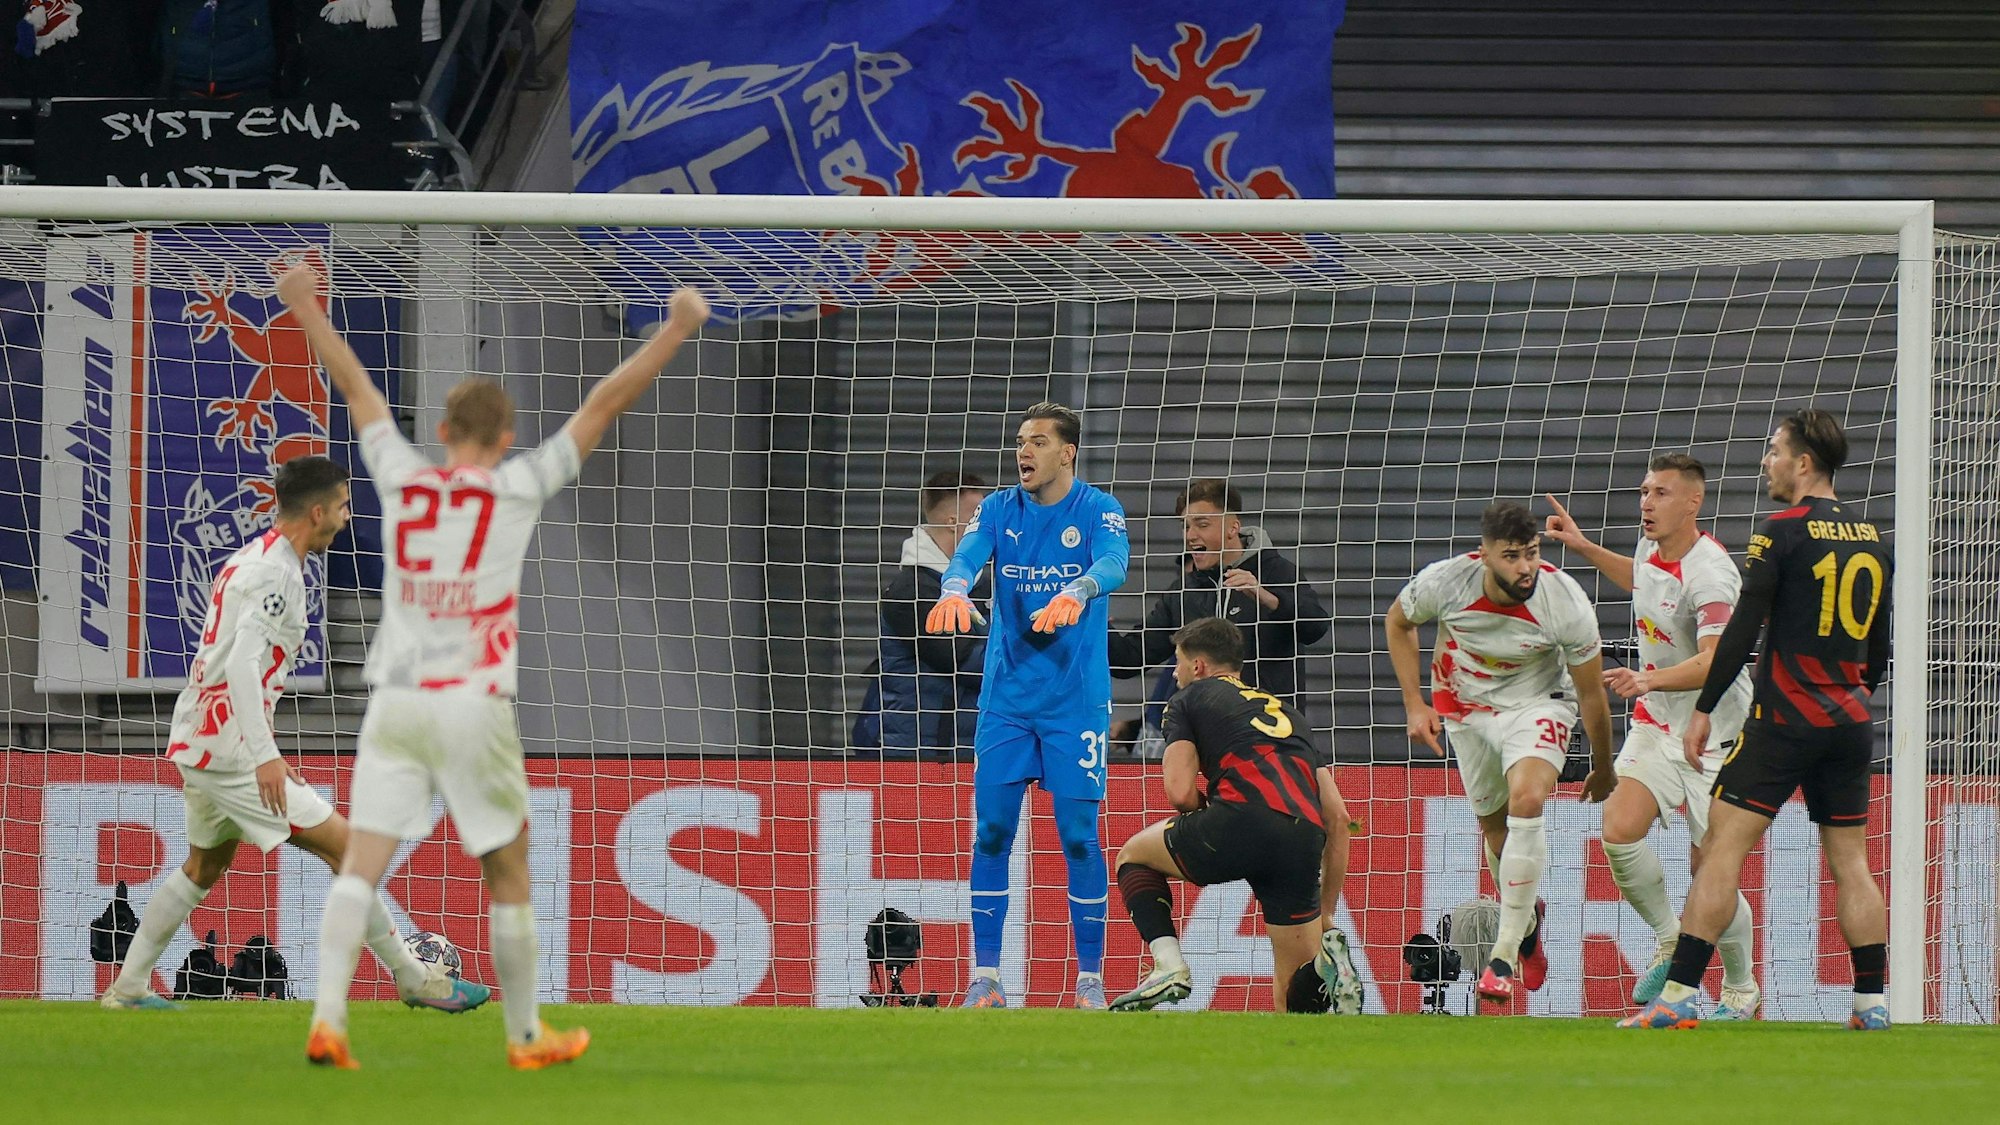 RB Leipzig jubelt gegen Manchester City über den 1:1-Ausgleich, der vor dem Rückspiel in der Champions League alles offen hält.